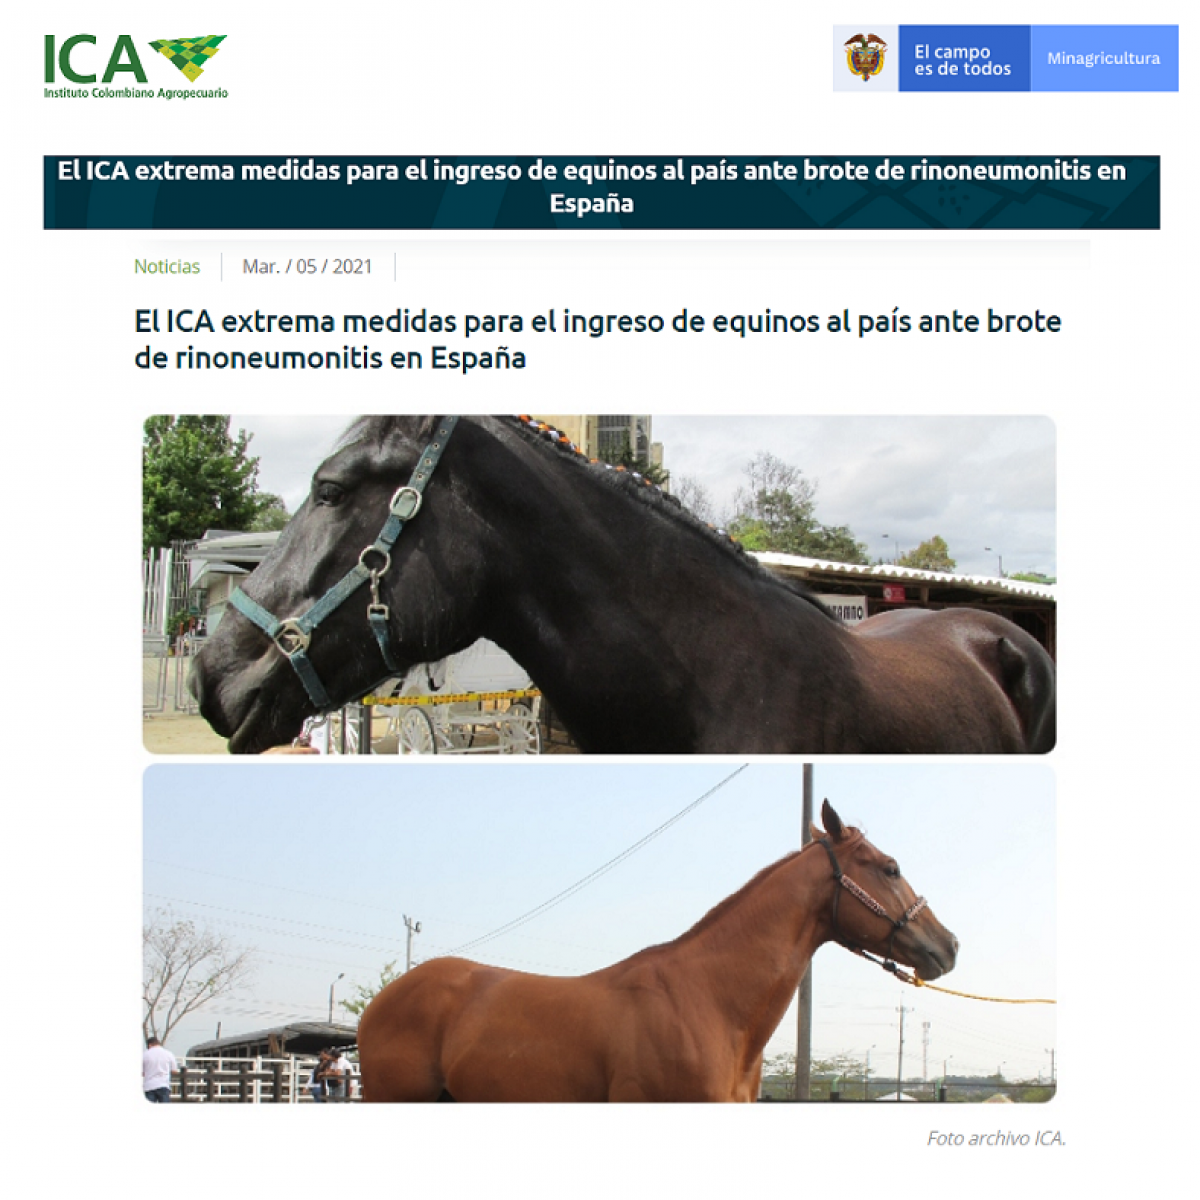 El ICA extrema medidas para el ingreso de equinos al país ante brote de rinoneumonitis en España